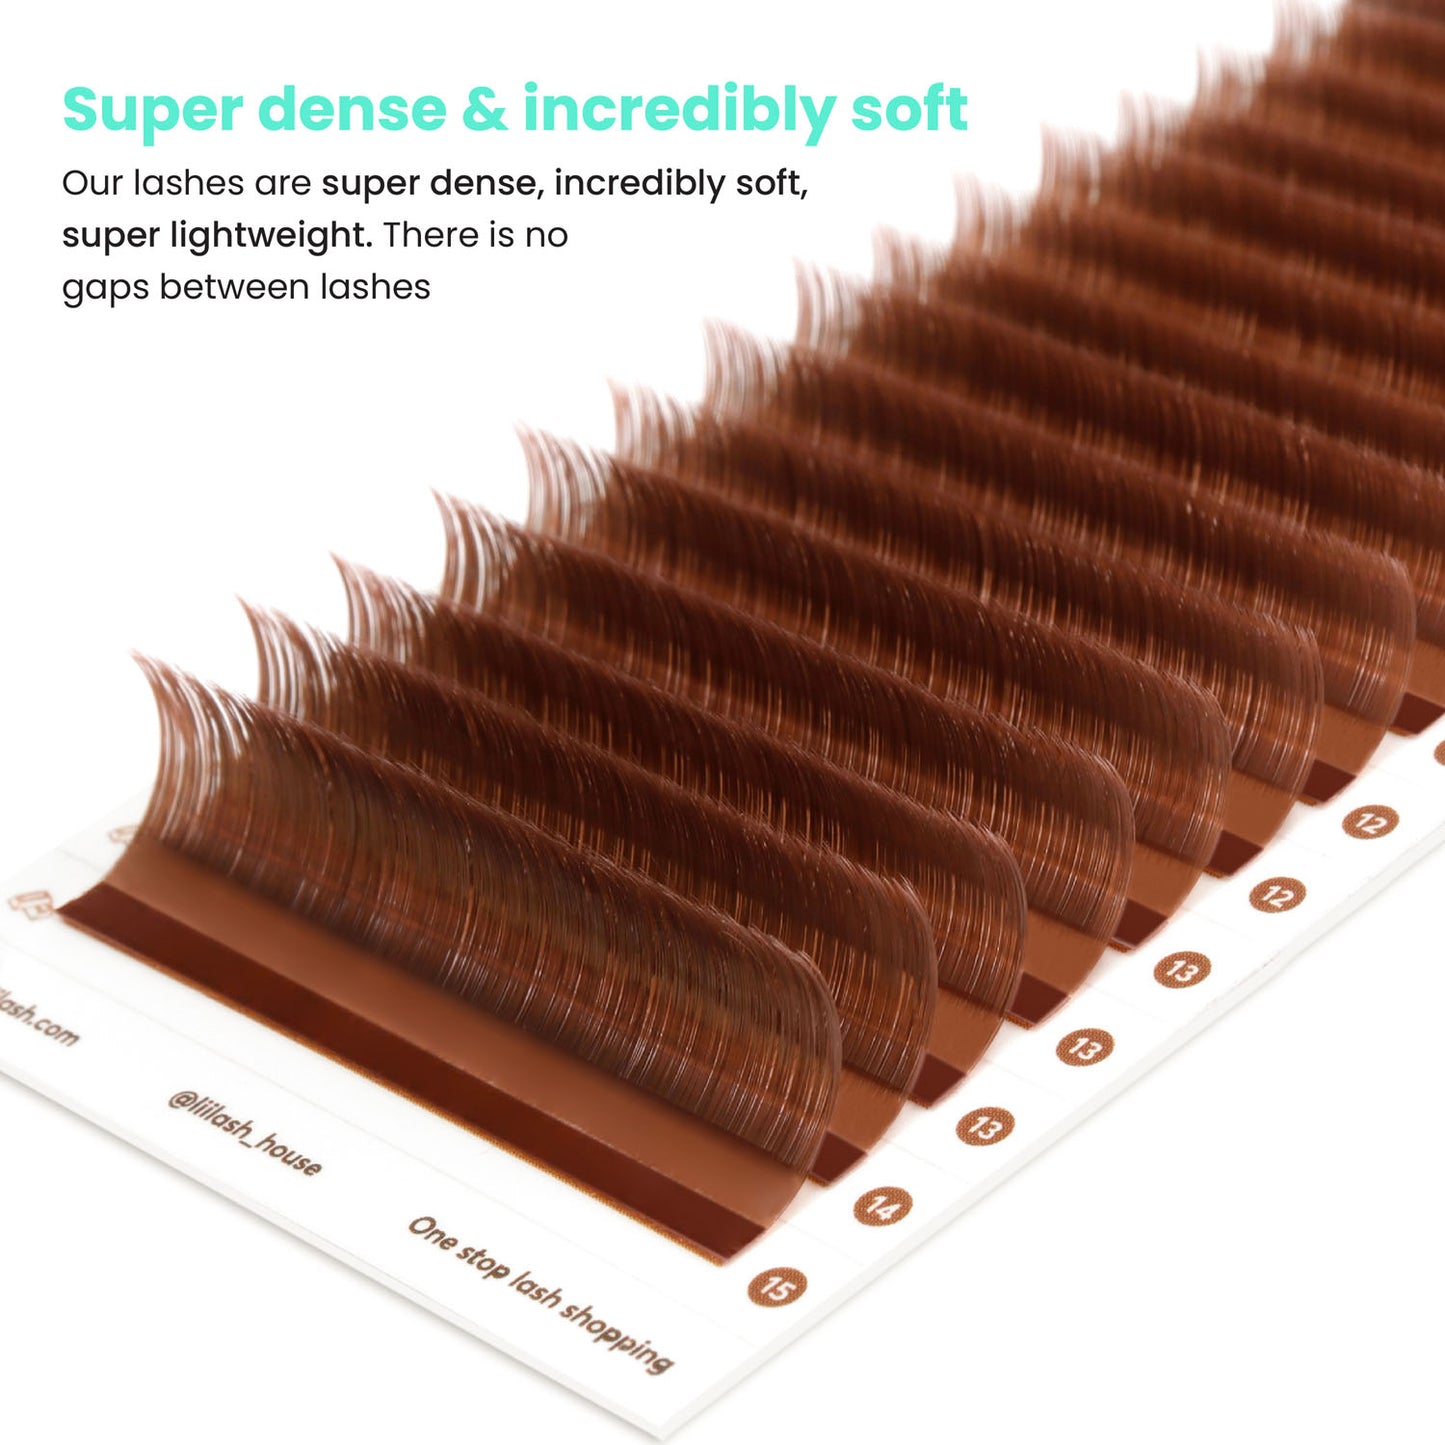 Cinnamon-Brown-colored-lashes-0.05mm-soft-super-dense